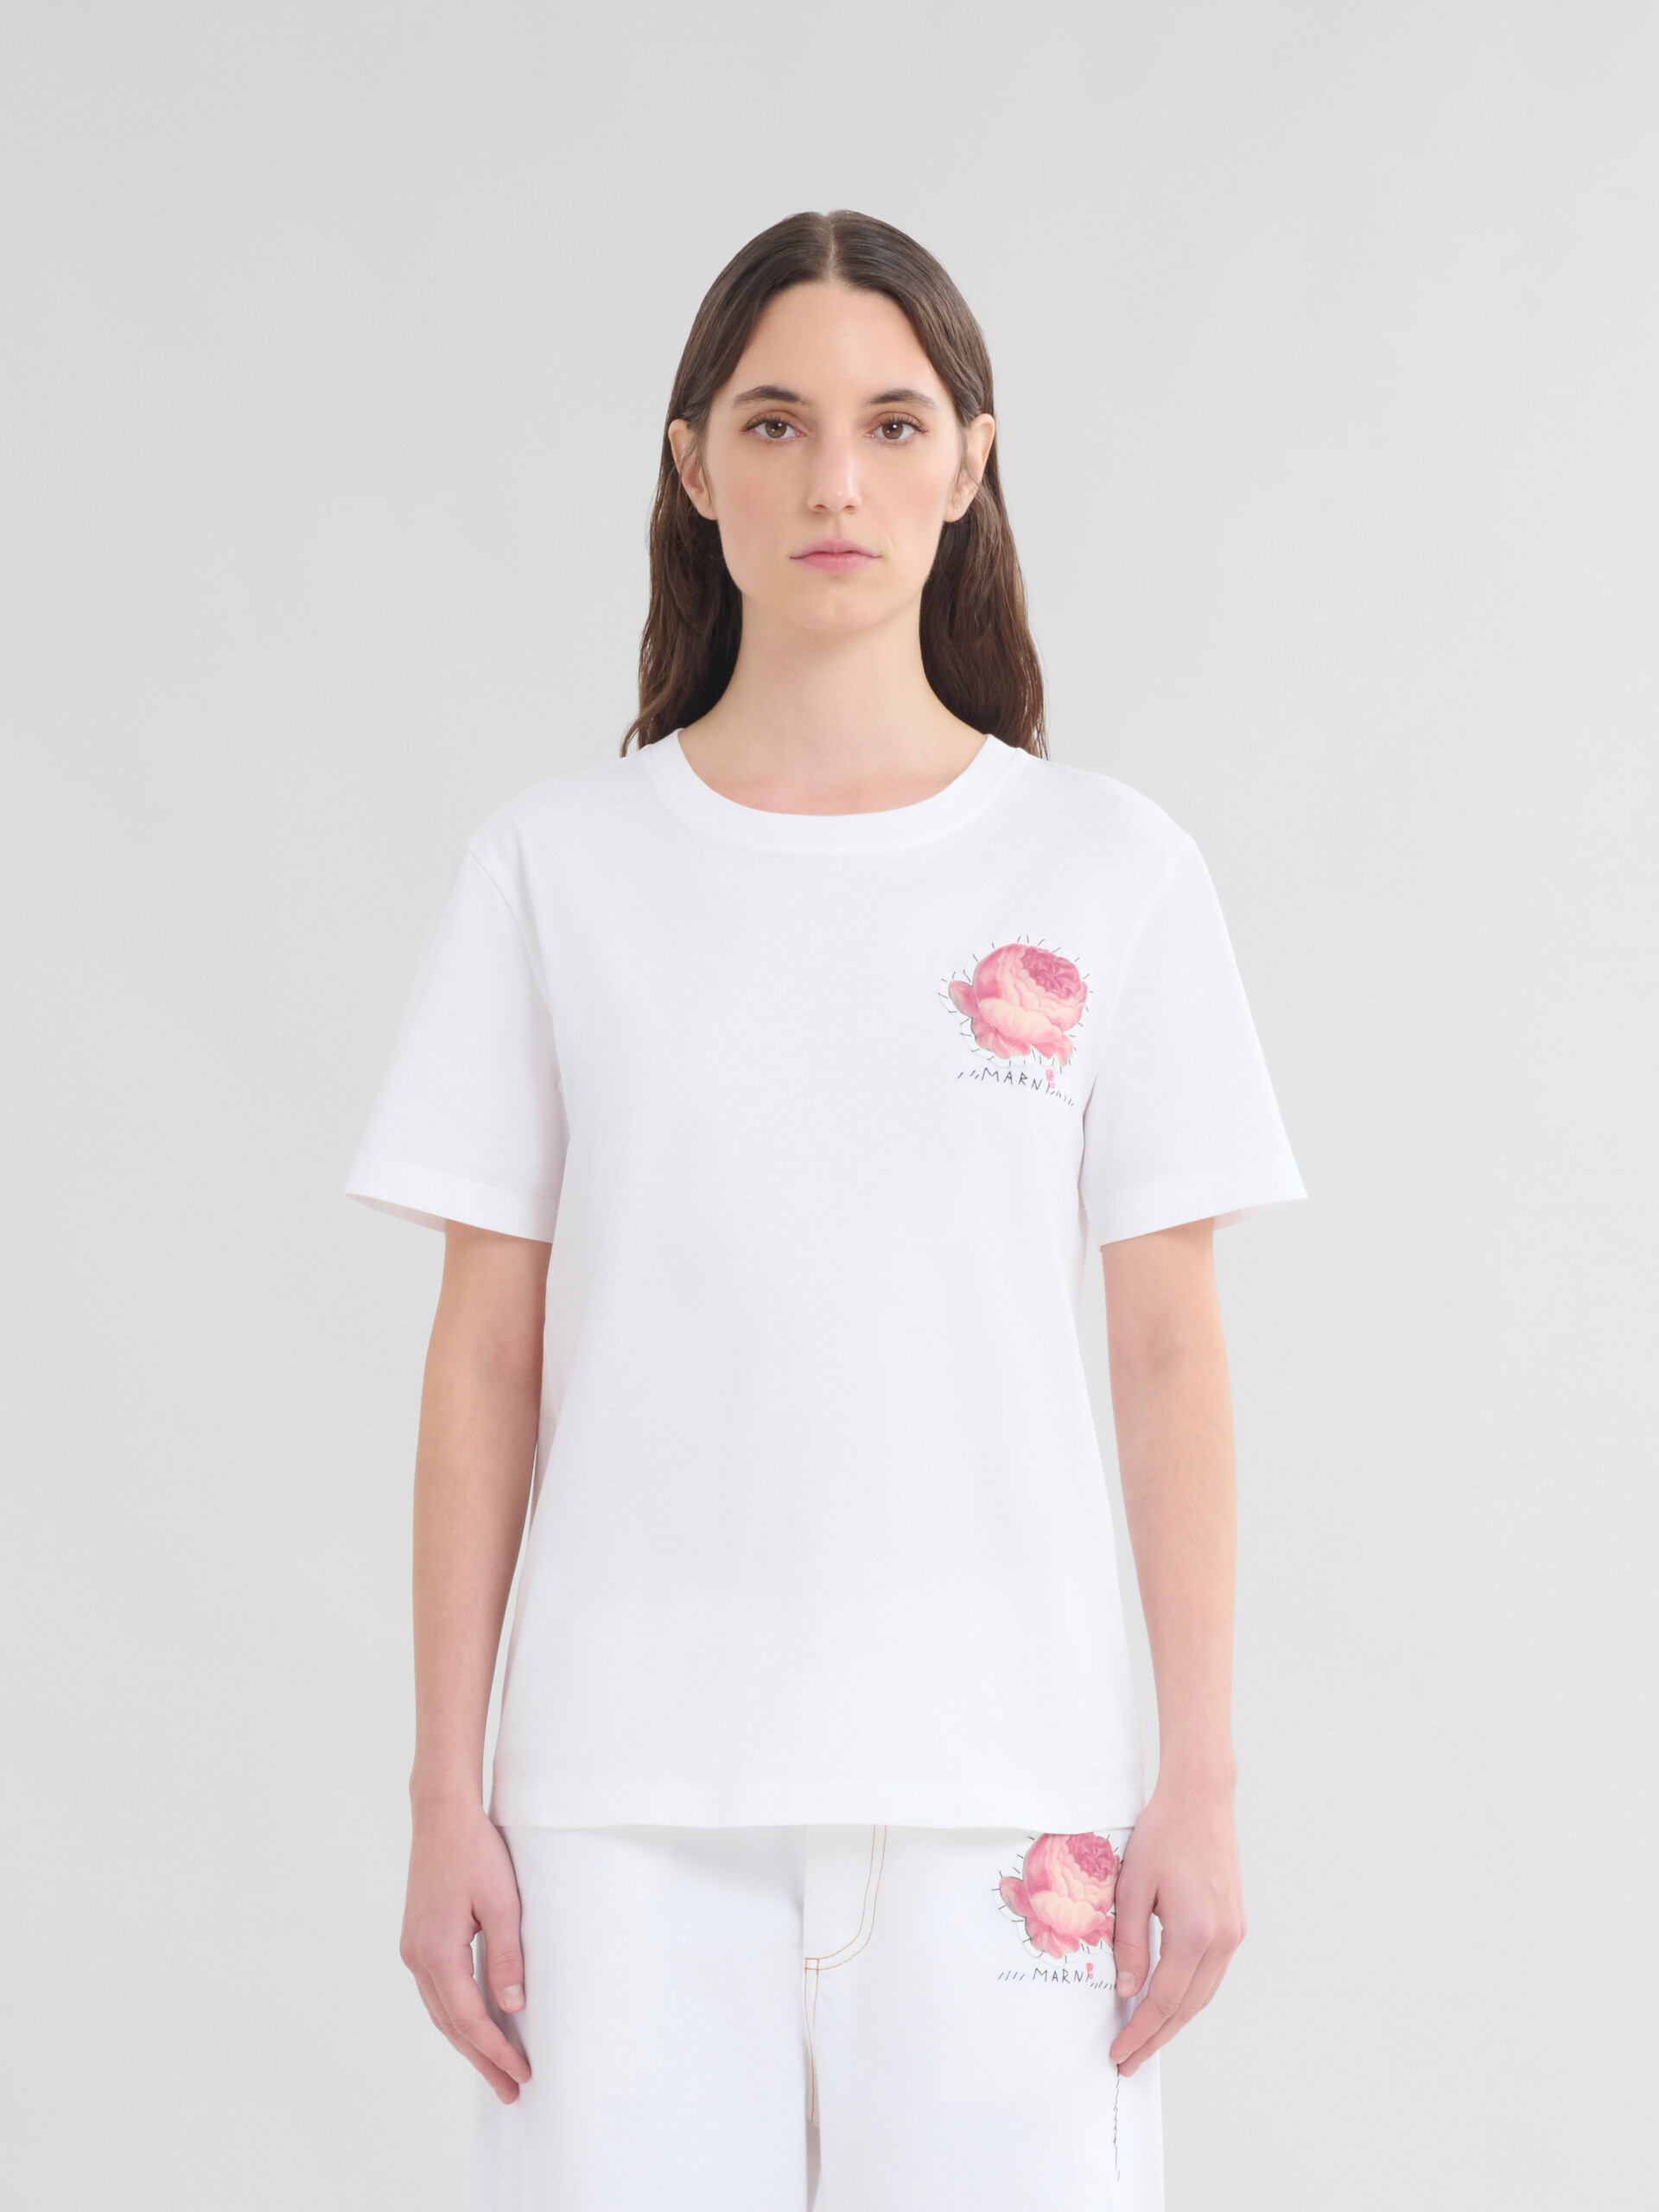 Weißes T-Shirt aus Bio-Jersey mit Blumen-Aufnäher - T-shirts - Image 2